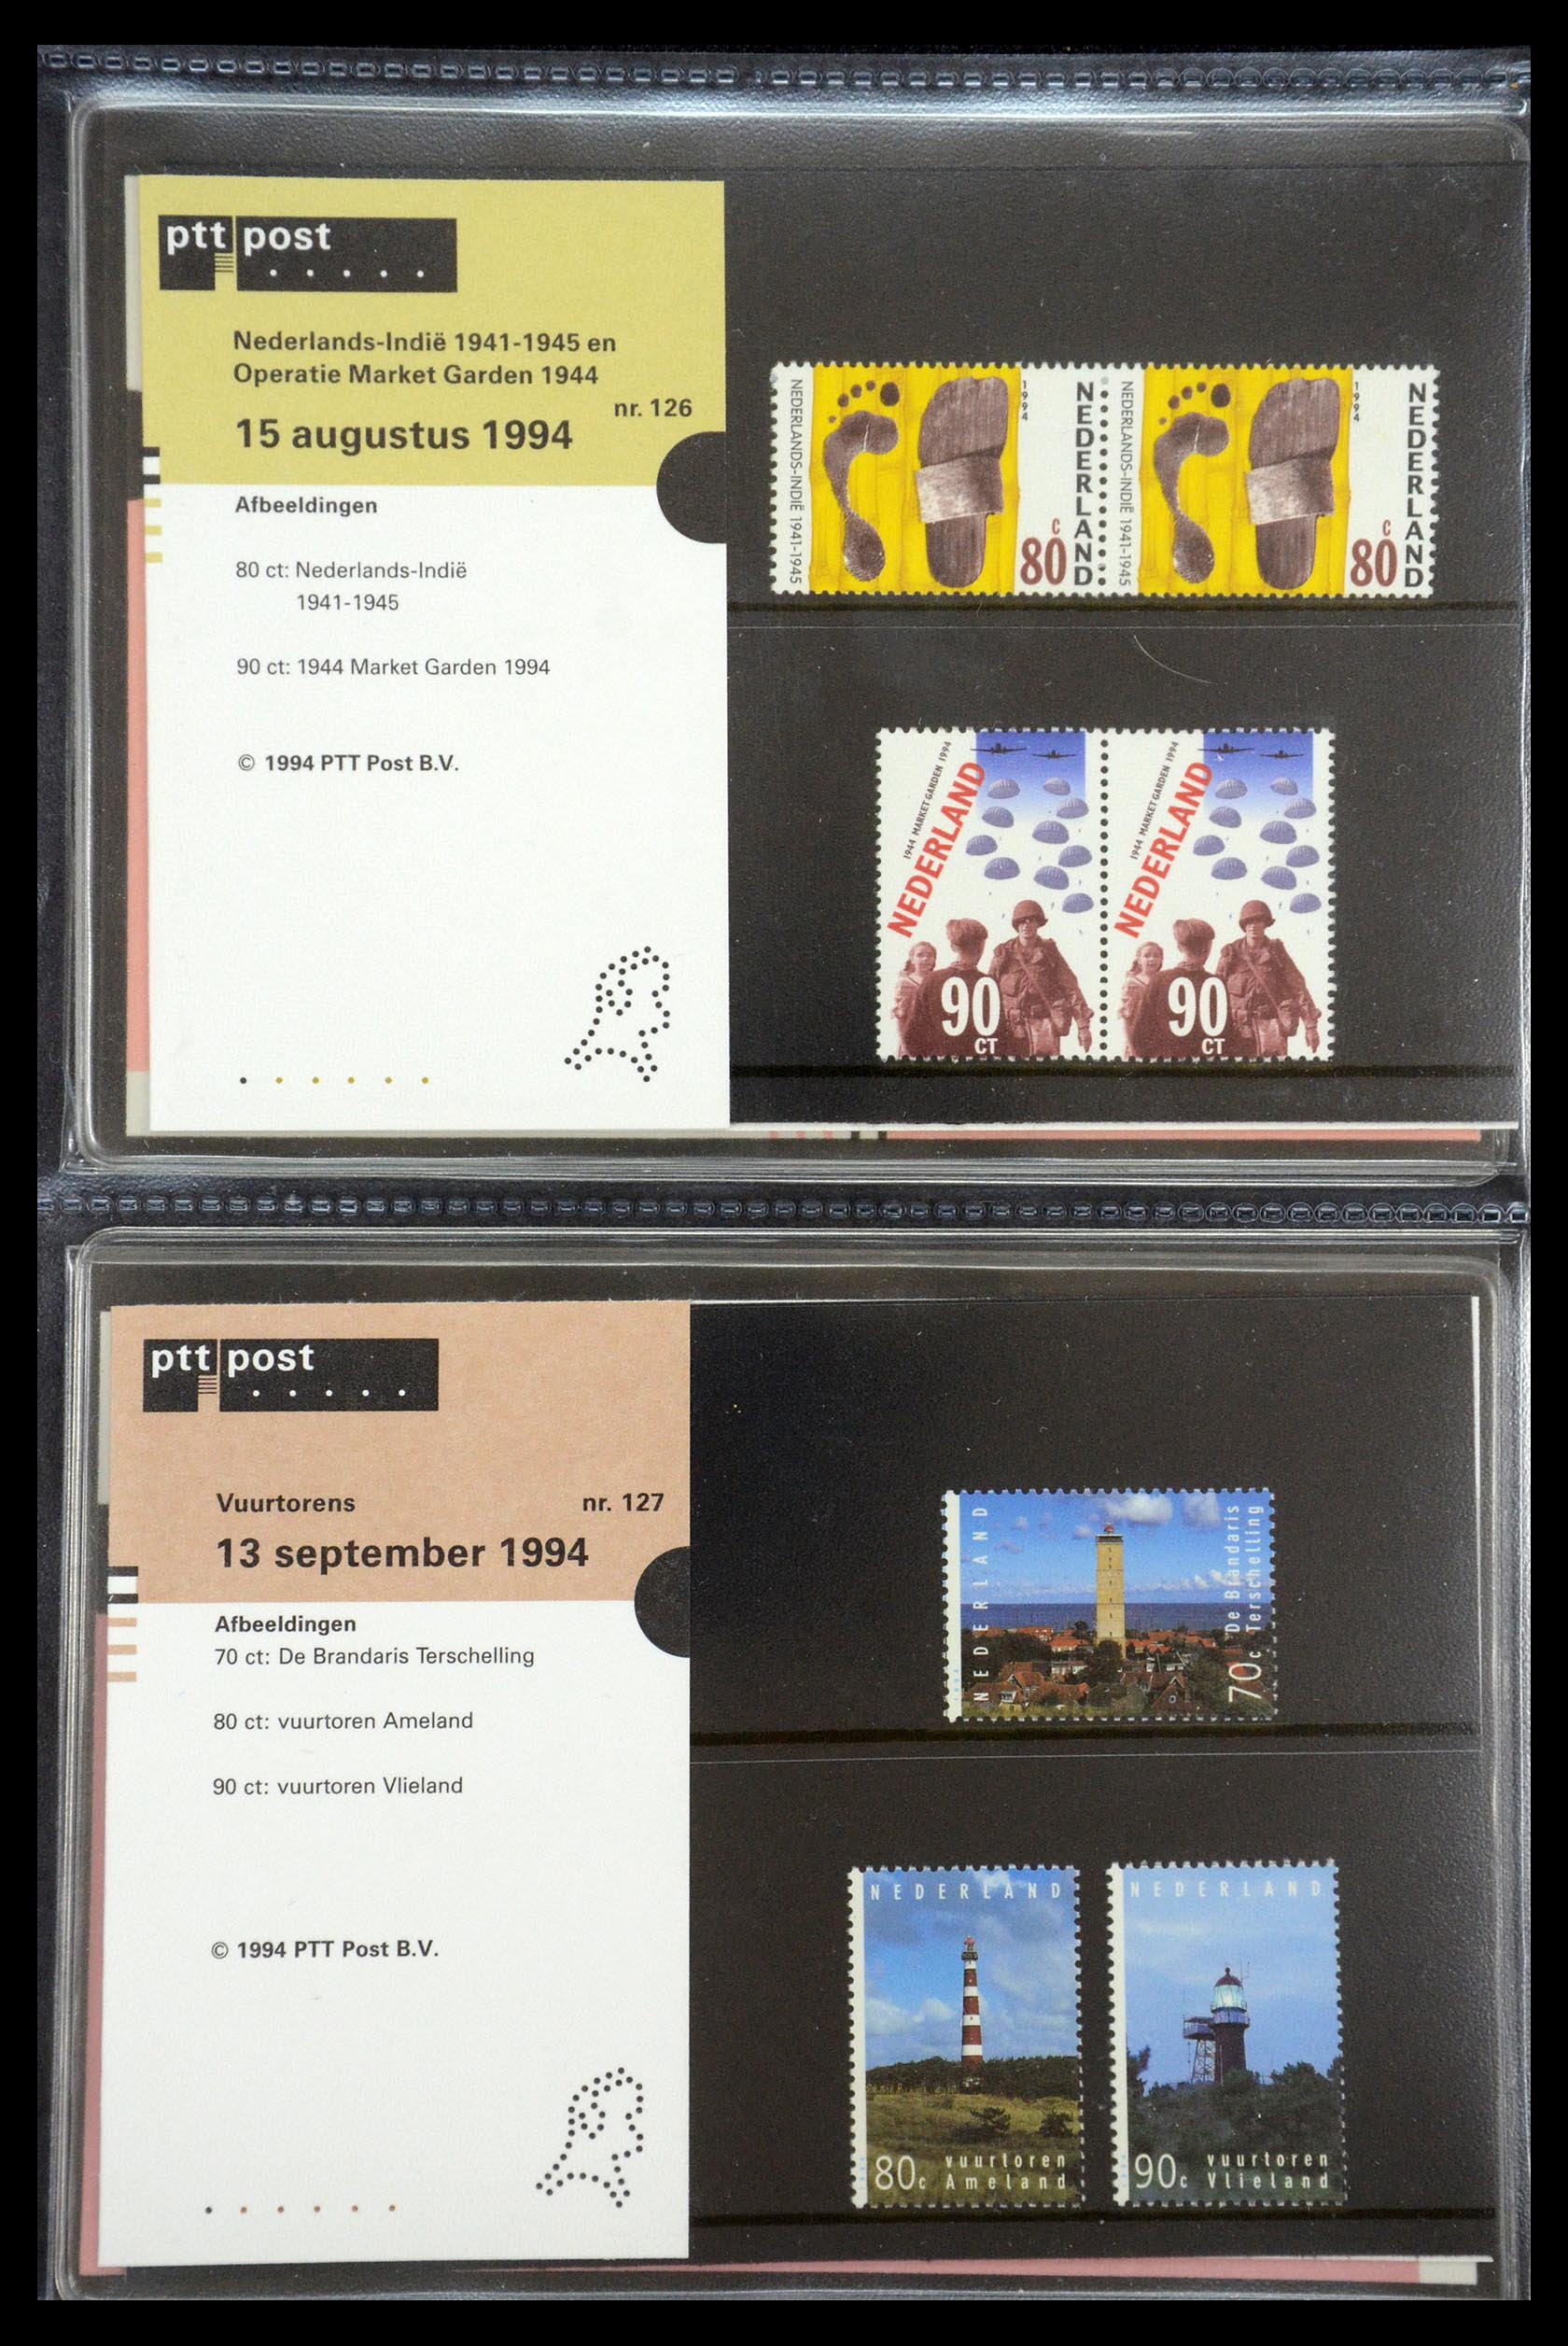 35187 065 - Stamp Collection 35187 Netherlands PTT presentation packs 1982-2019!